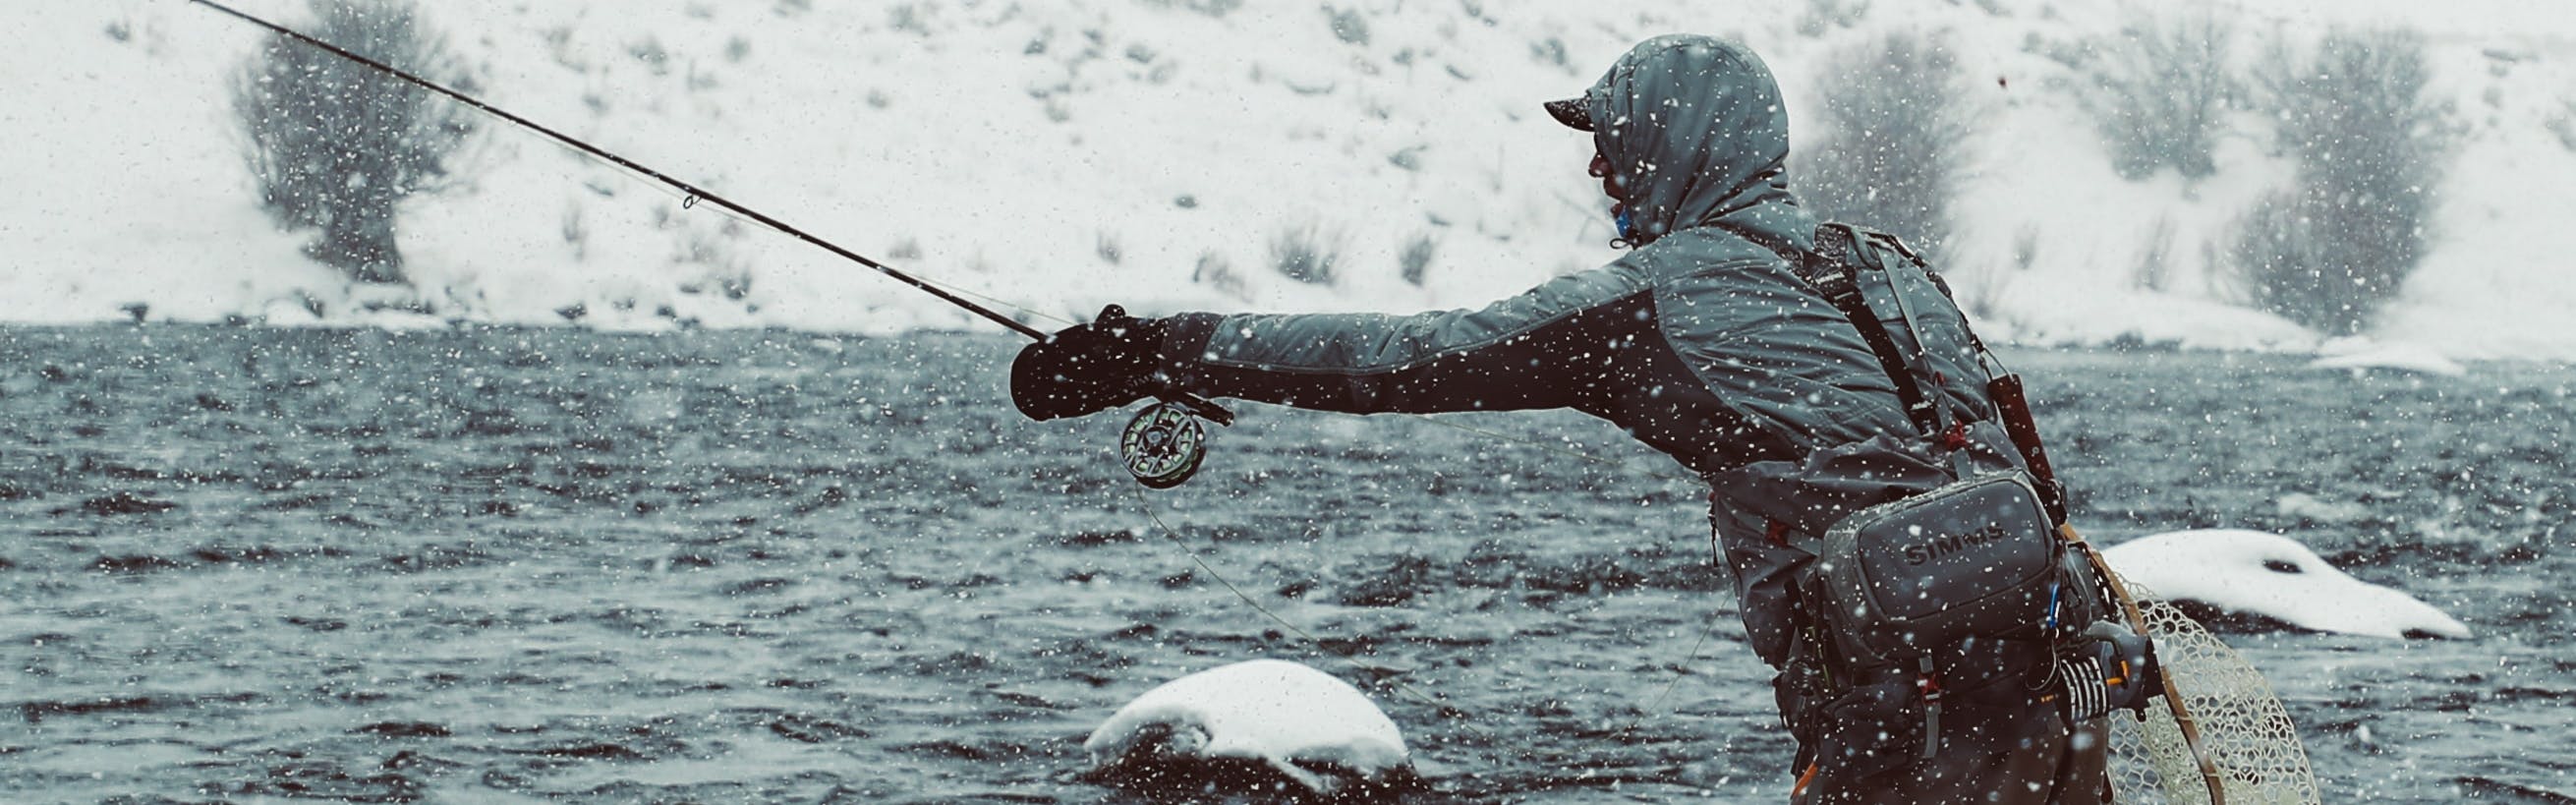 Man in jacket fly fishing in winter